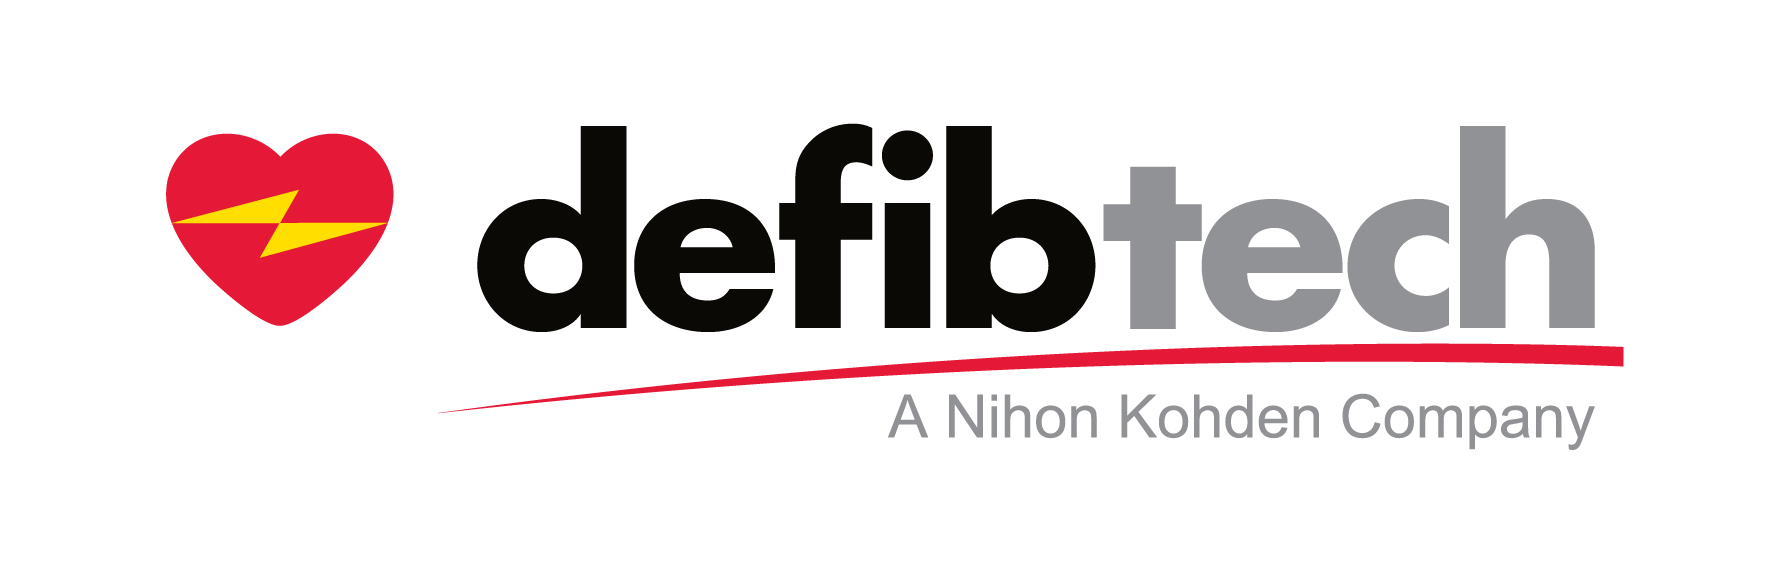 Defibtech-logo